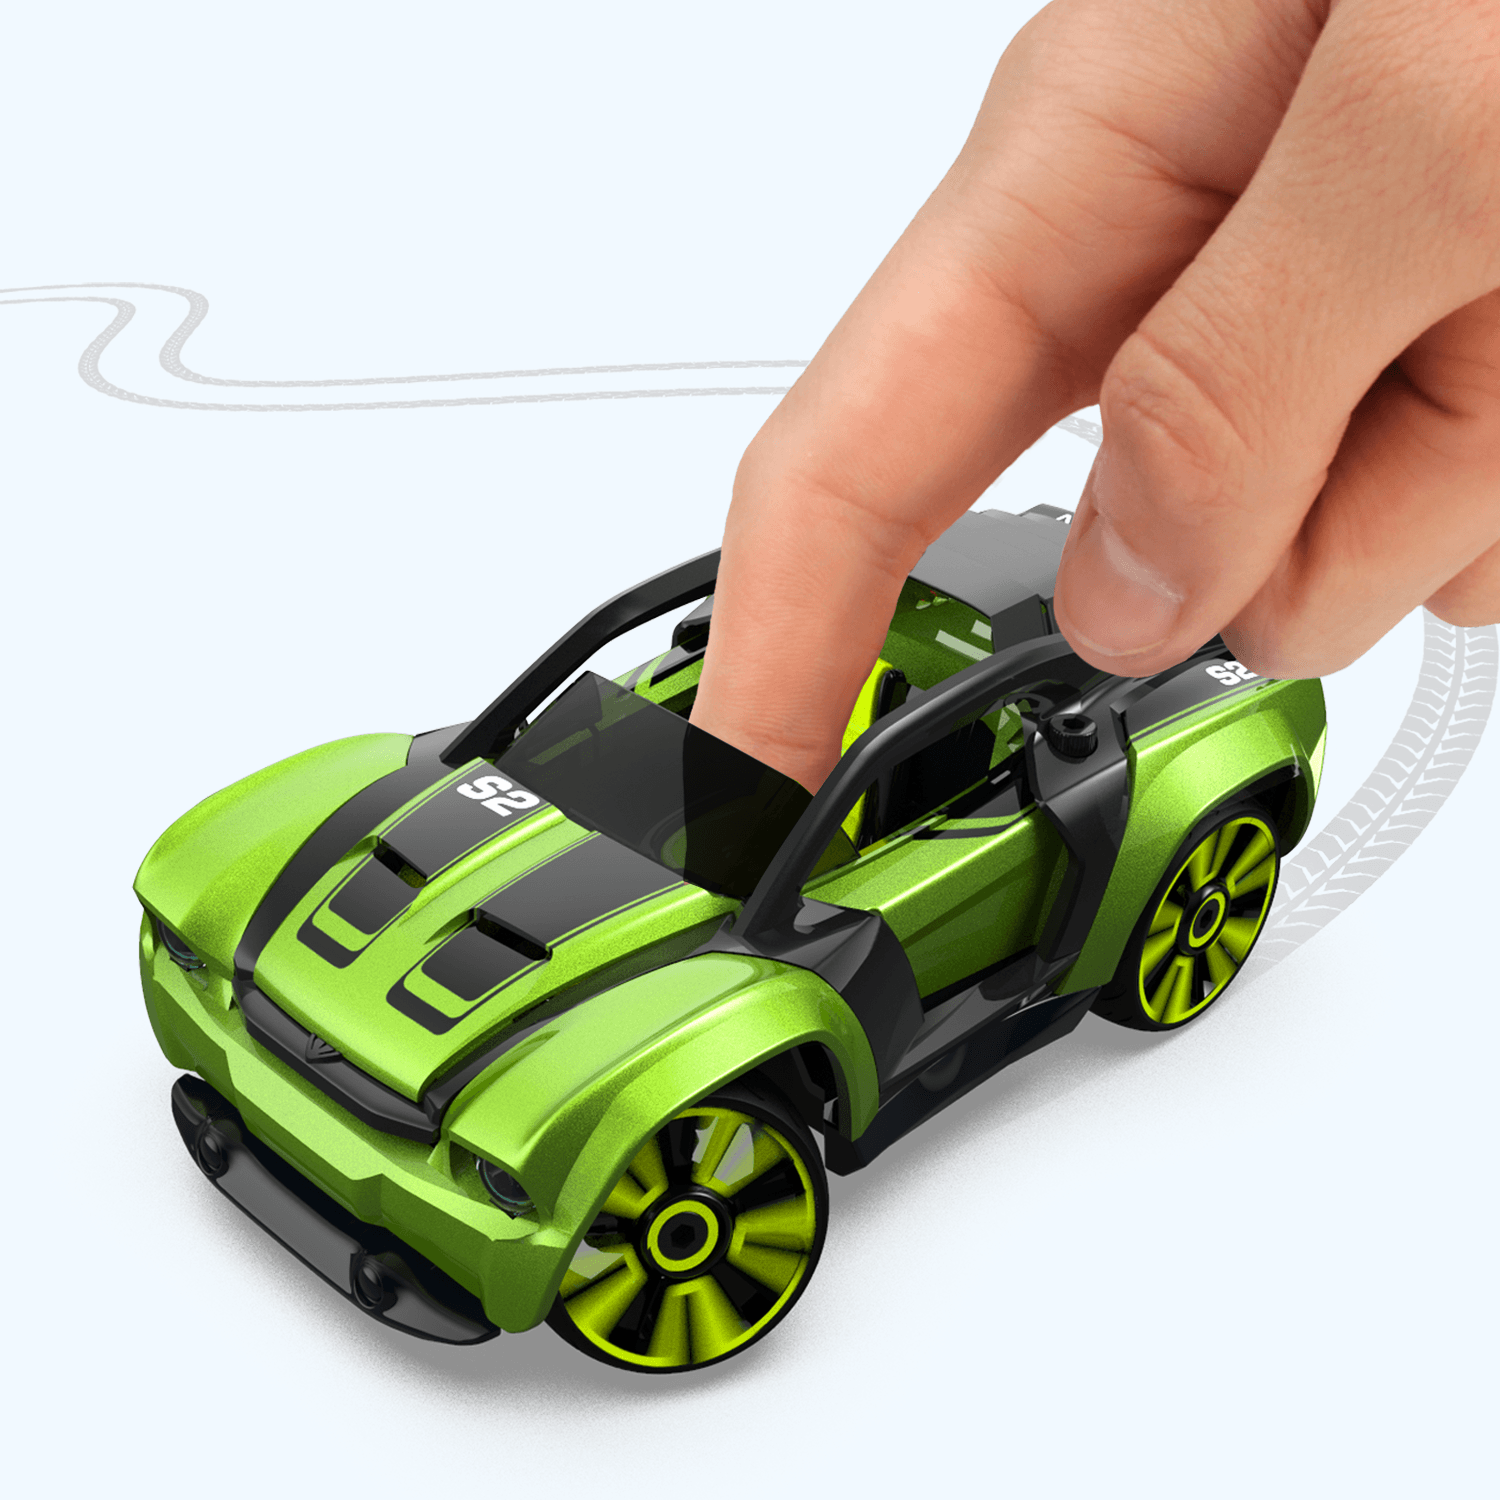 Modarri T1 Track Construisez votre kit de voiture Ensemble de jouets Ultimate Toy Car: Créez votre propre jouet de voiture Pour des milliers de modèles Réelle direction et suspension Éducatif Take Apart Toy Vehicle 